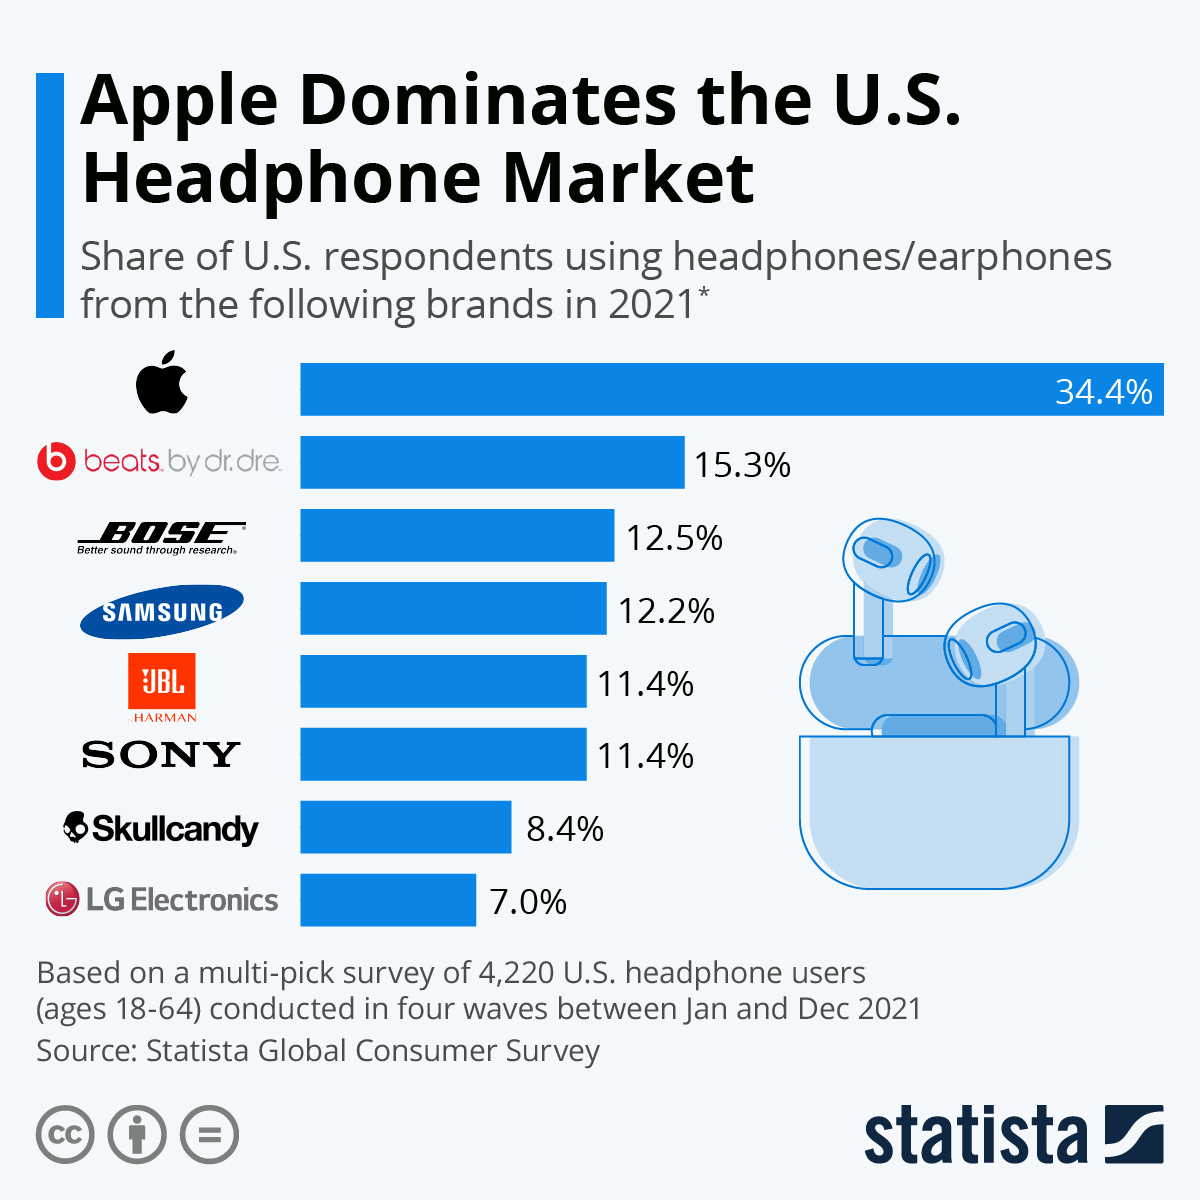 Auricolari, la maggior parte della fetta di mercato USA è di Apple